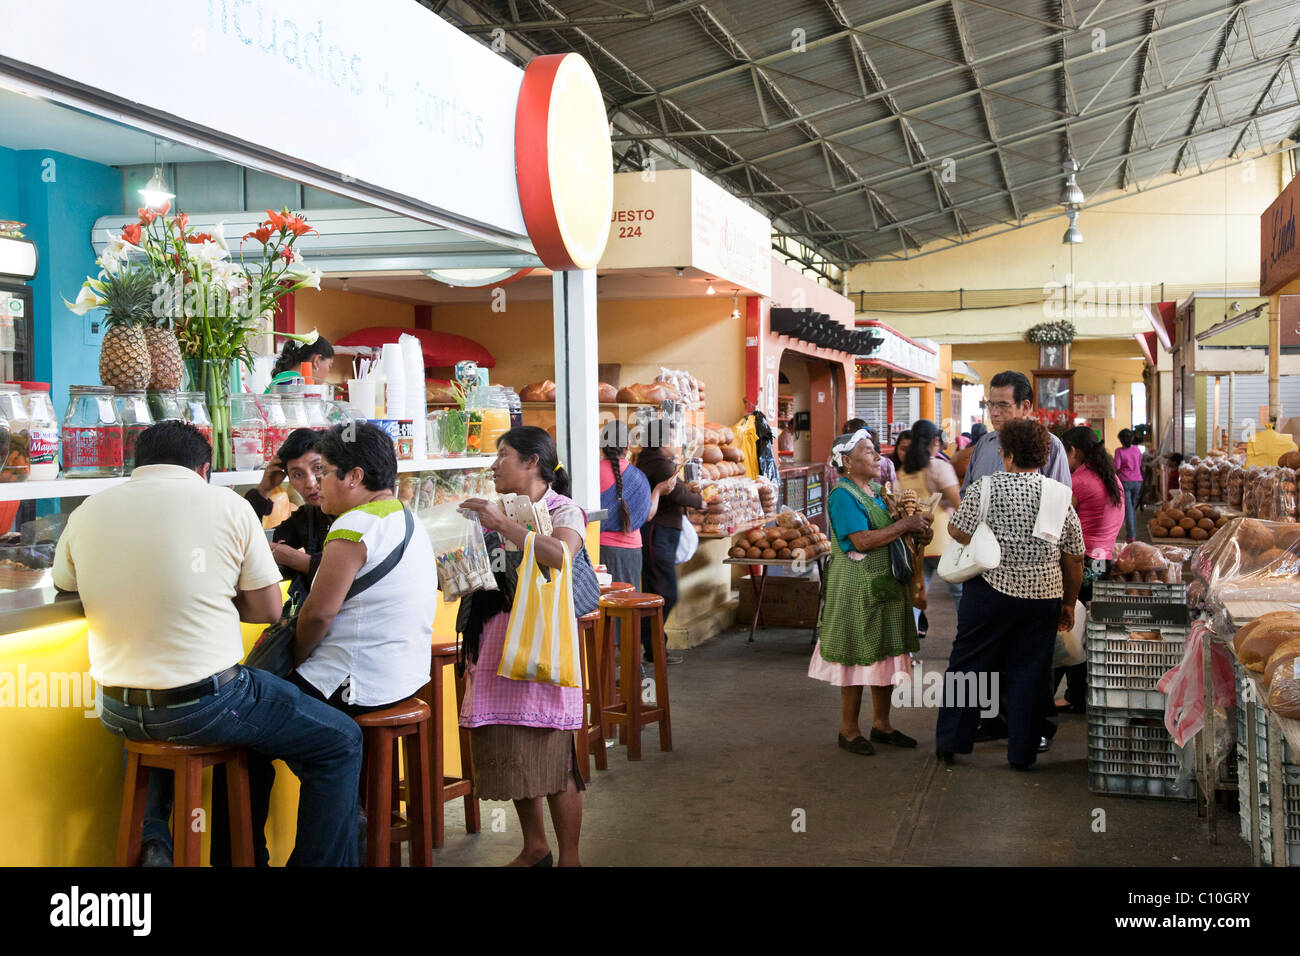 Vista generale del xx novembre del mercato con le donne indigene fornitori che esercitano il commercio tra i clienti dello shopping o mangiare a platea Oaxaca Foto Stock